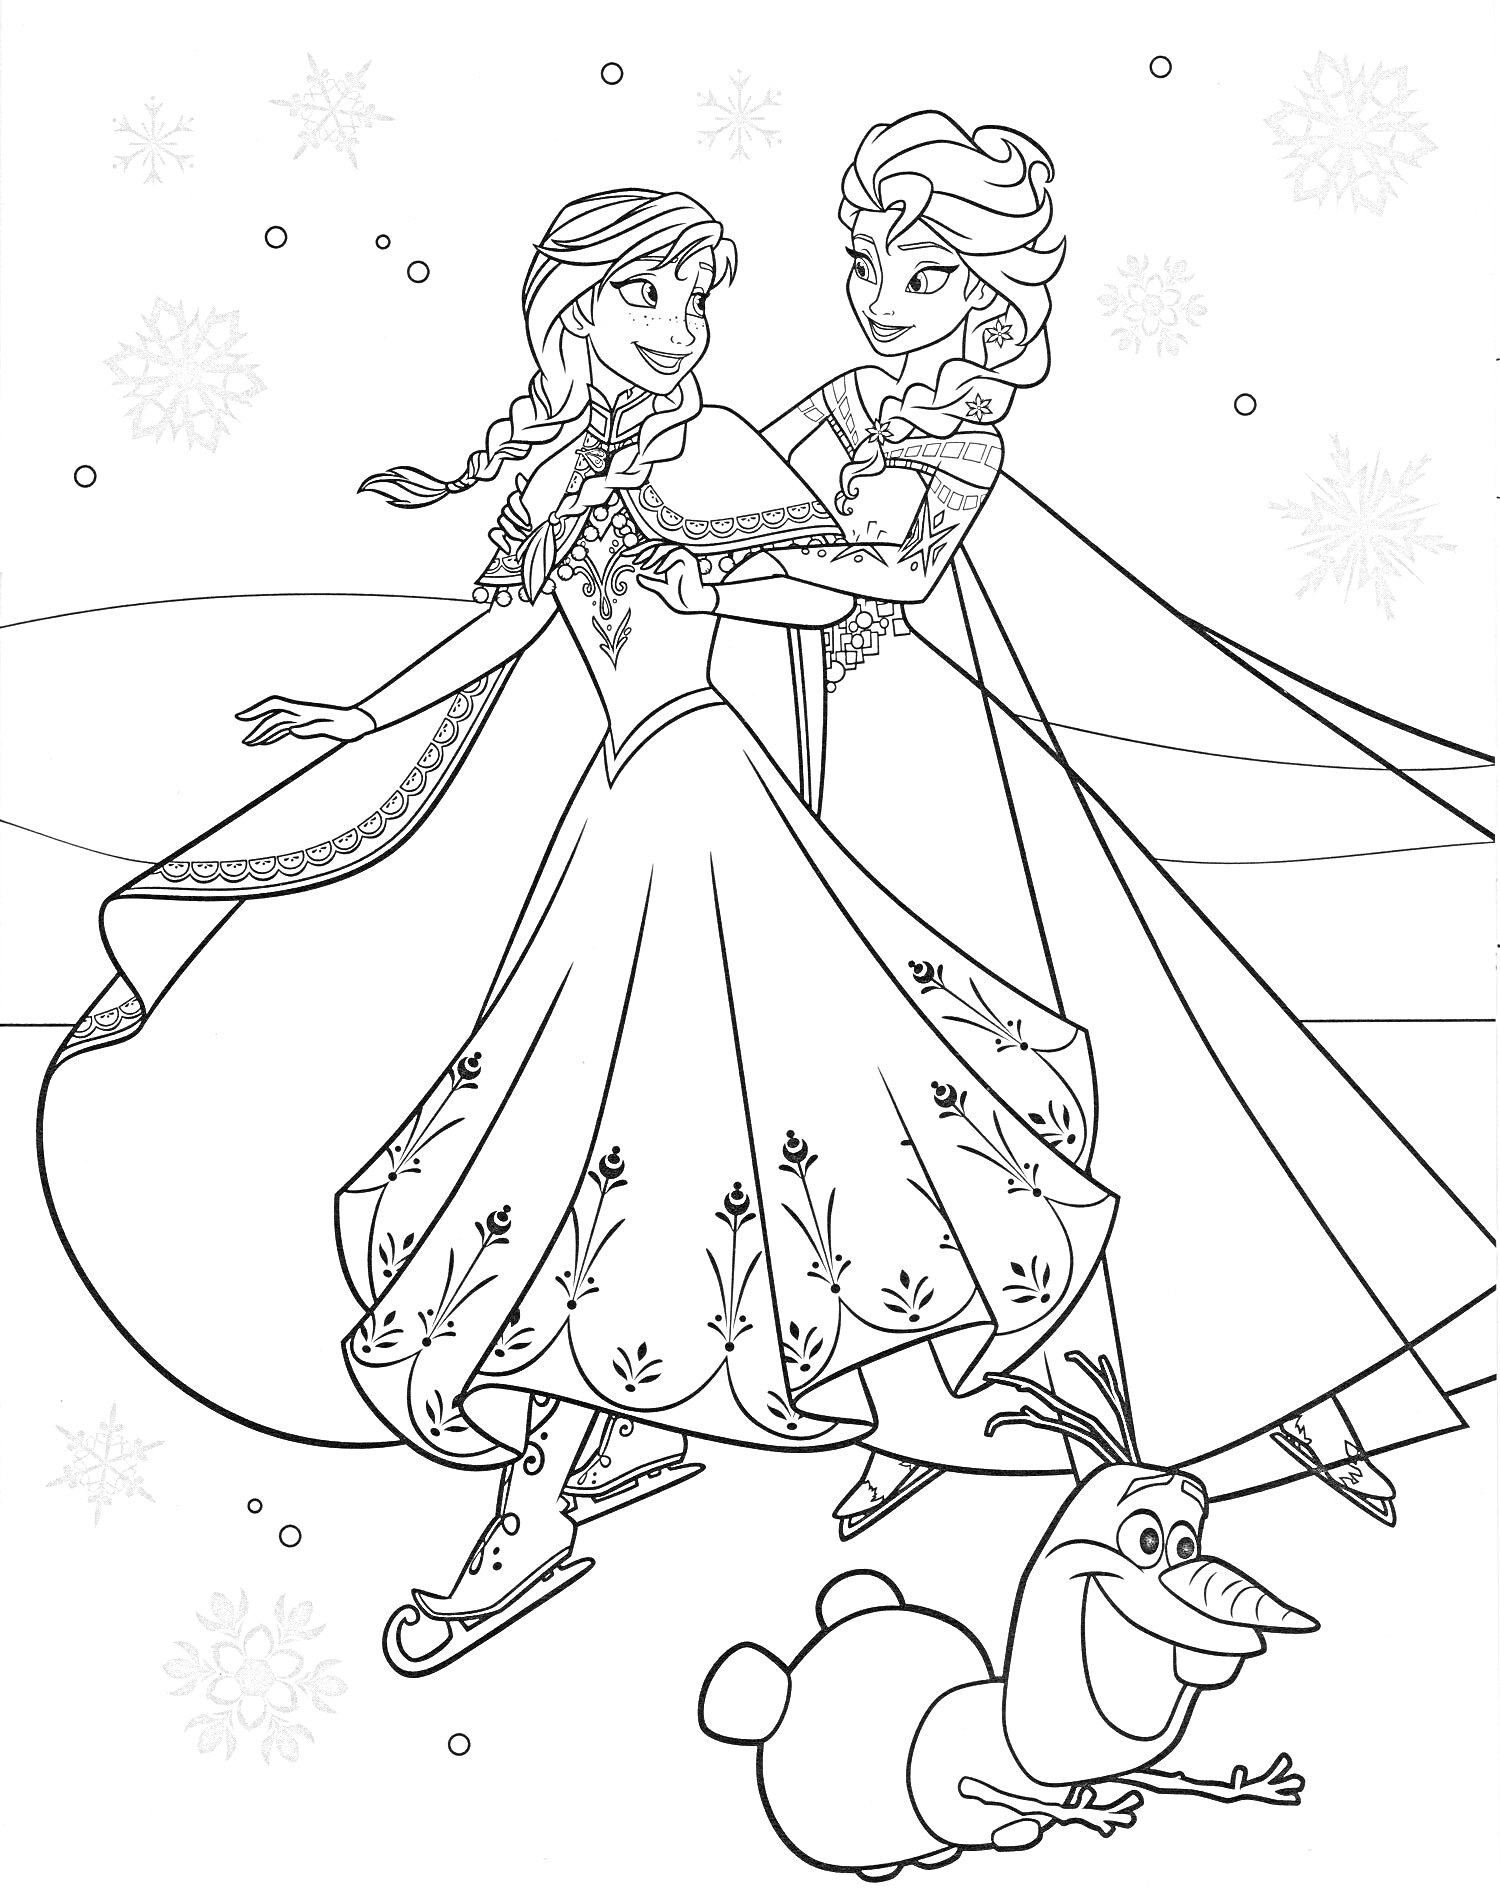 Раскраска Две девушки на коньках с снеговиком на фоне снежинок